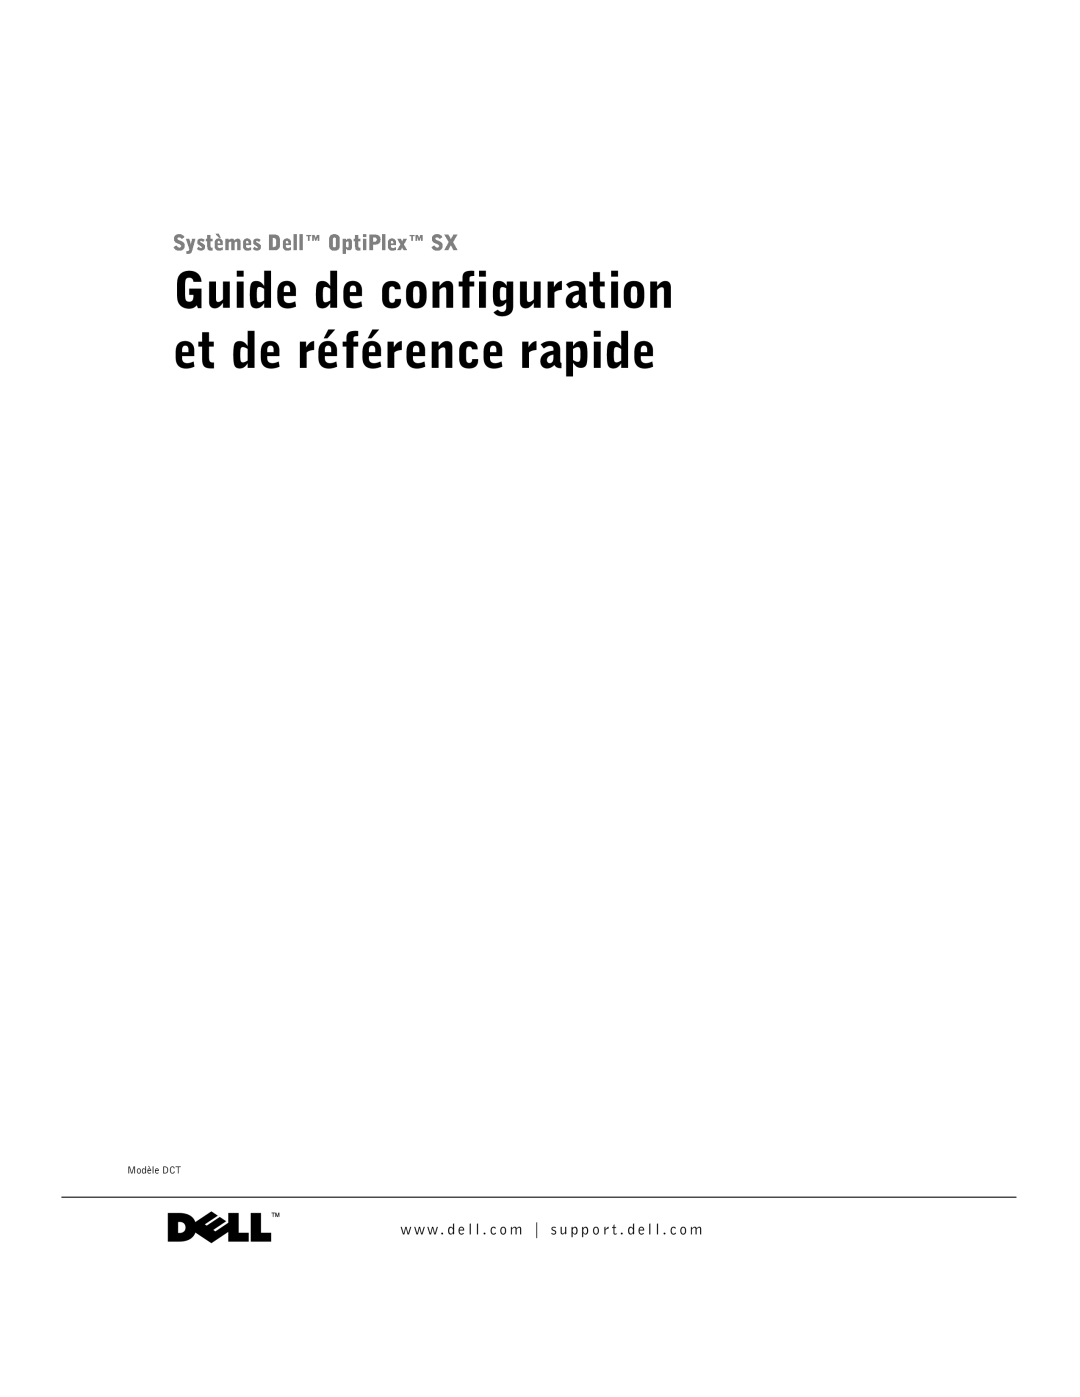 Dell manual Guide de configuration et de référence rapide, Systèmes Dell OptiPlex SX, Modèle DCT 